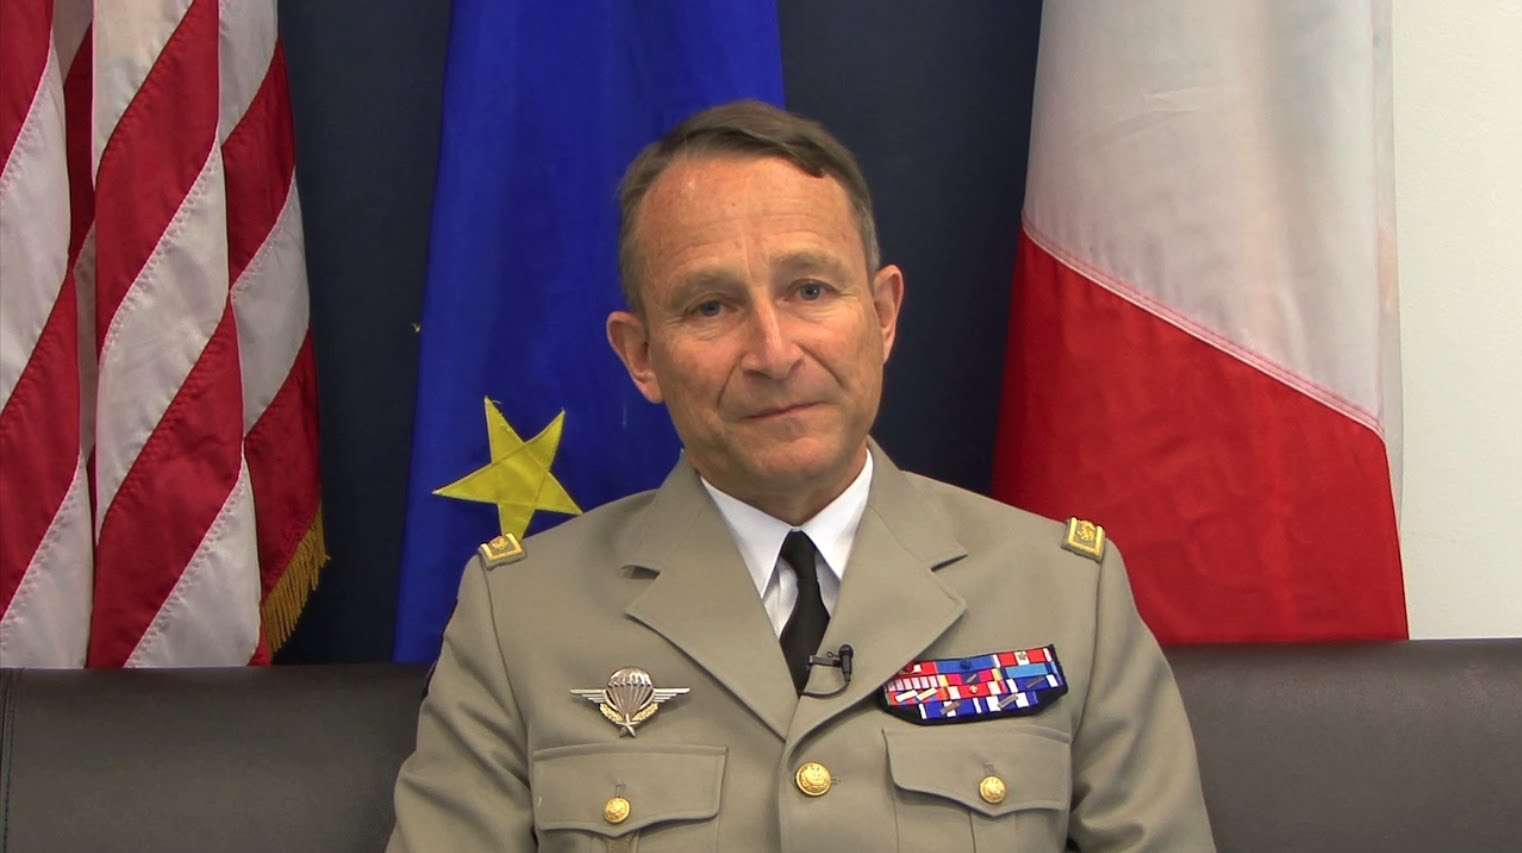 Παραιτήθηκε ο Αρχηγός των Γαλλικών ΕΔ λόγω περικοπών!